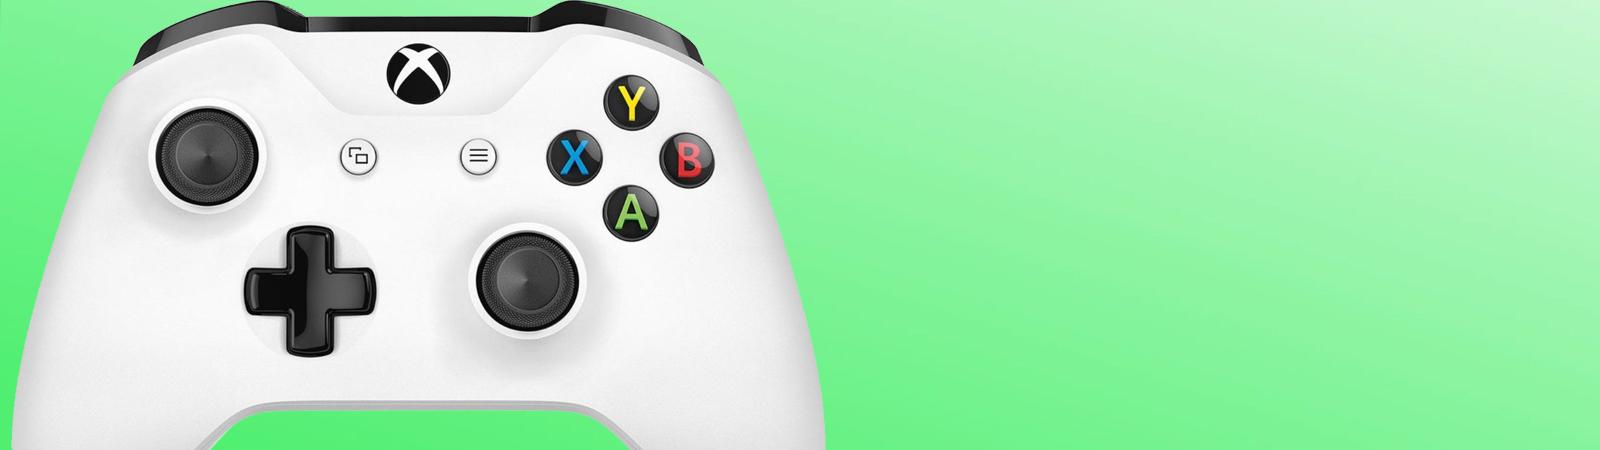 Gebakjes ophouden Touhou Xbox One consoles, Xbox One games & accessoires kopen bij GooHoo!